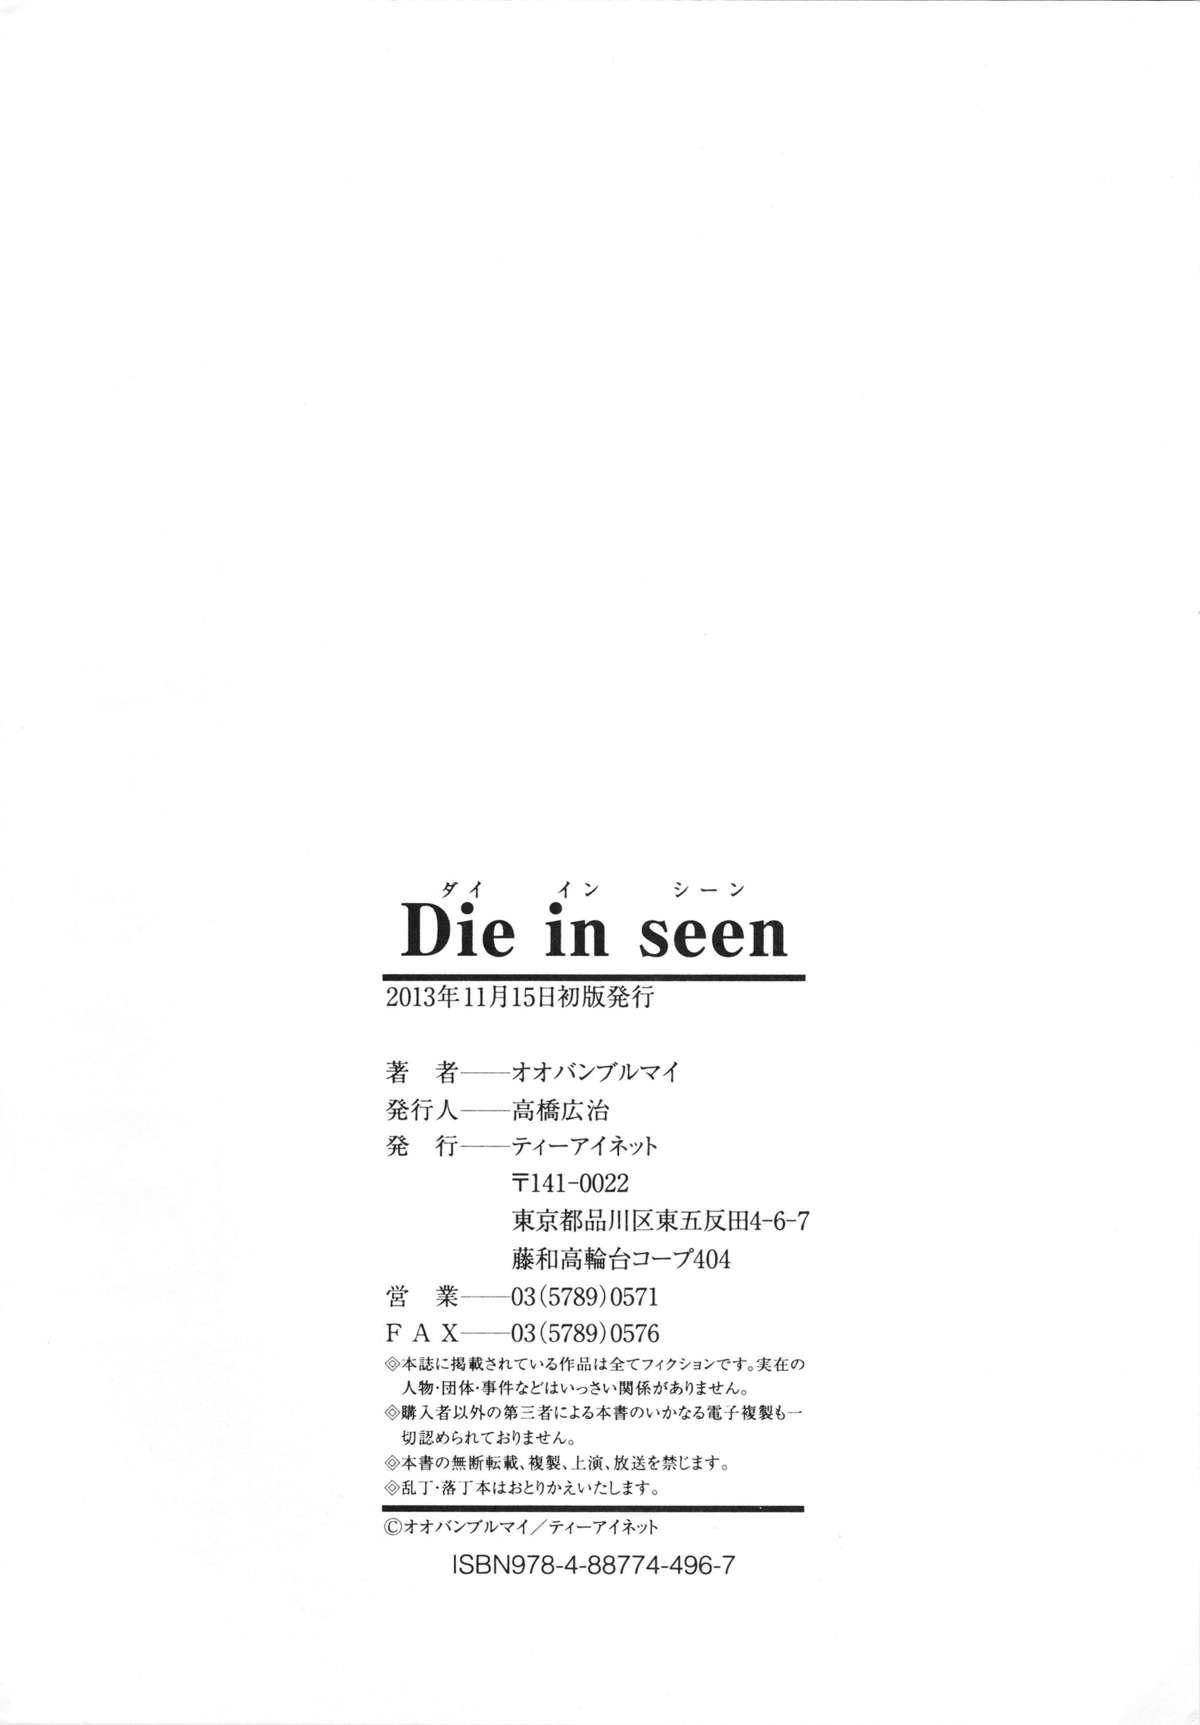 [オオバンブルマイ] Die in seen